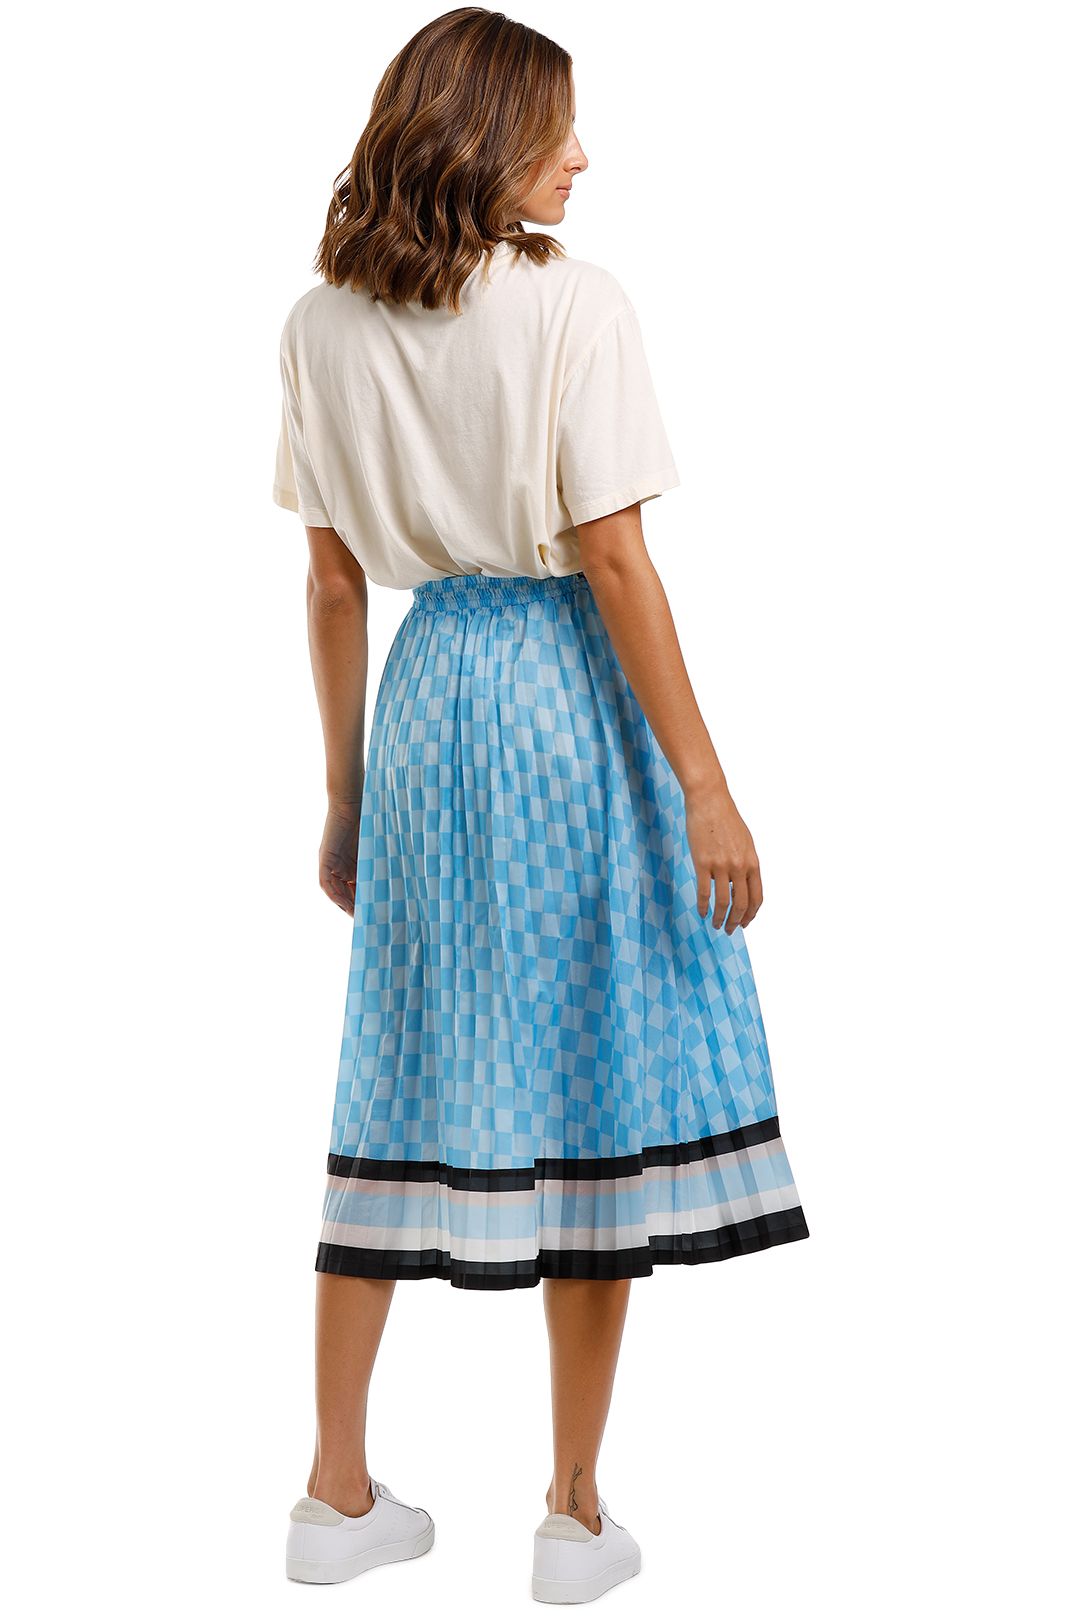 PE Nation Chaser Skirt Blue Stripe